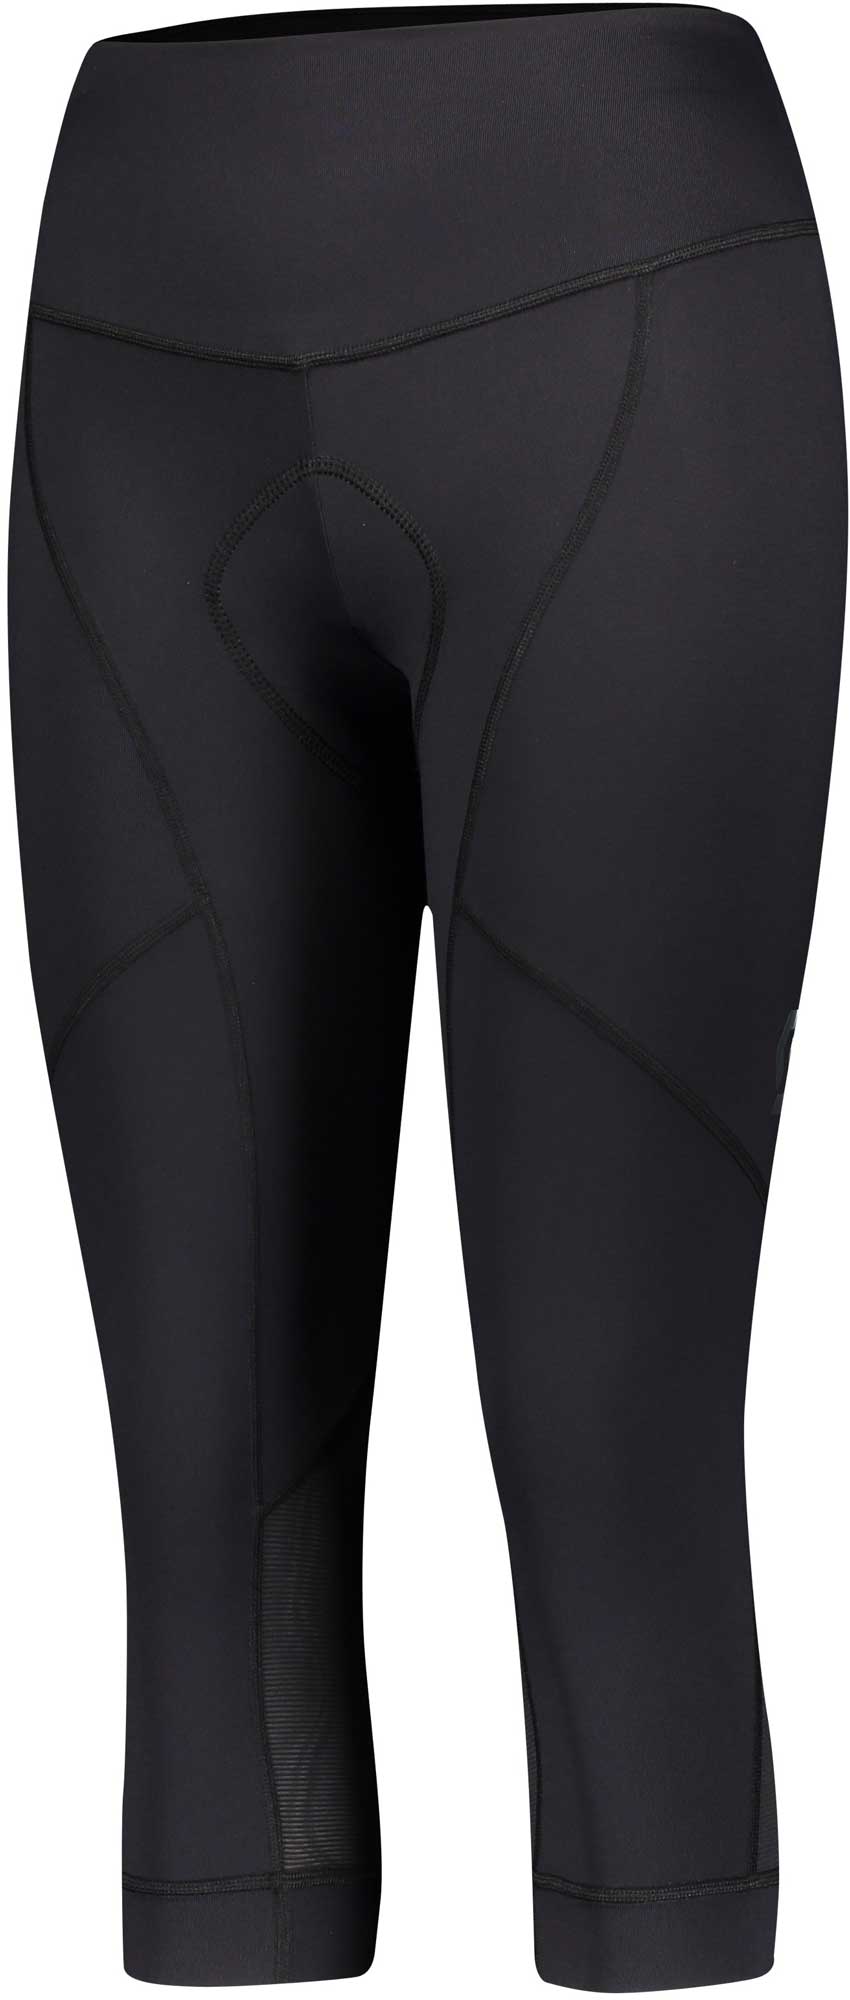 Women's 3/4 length cycling pants